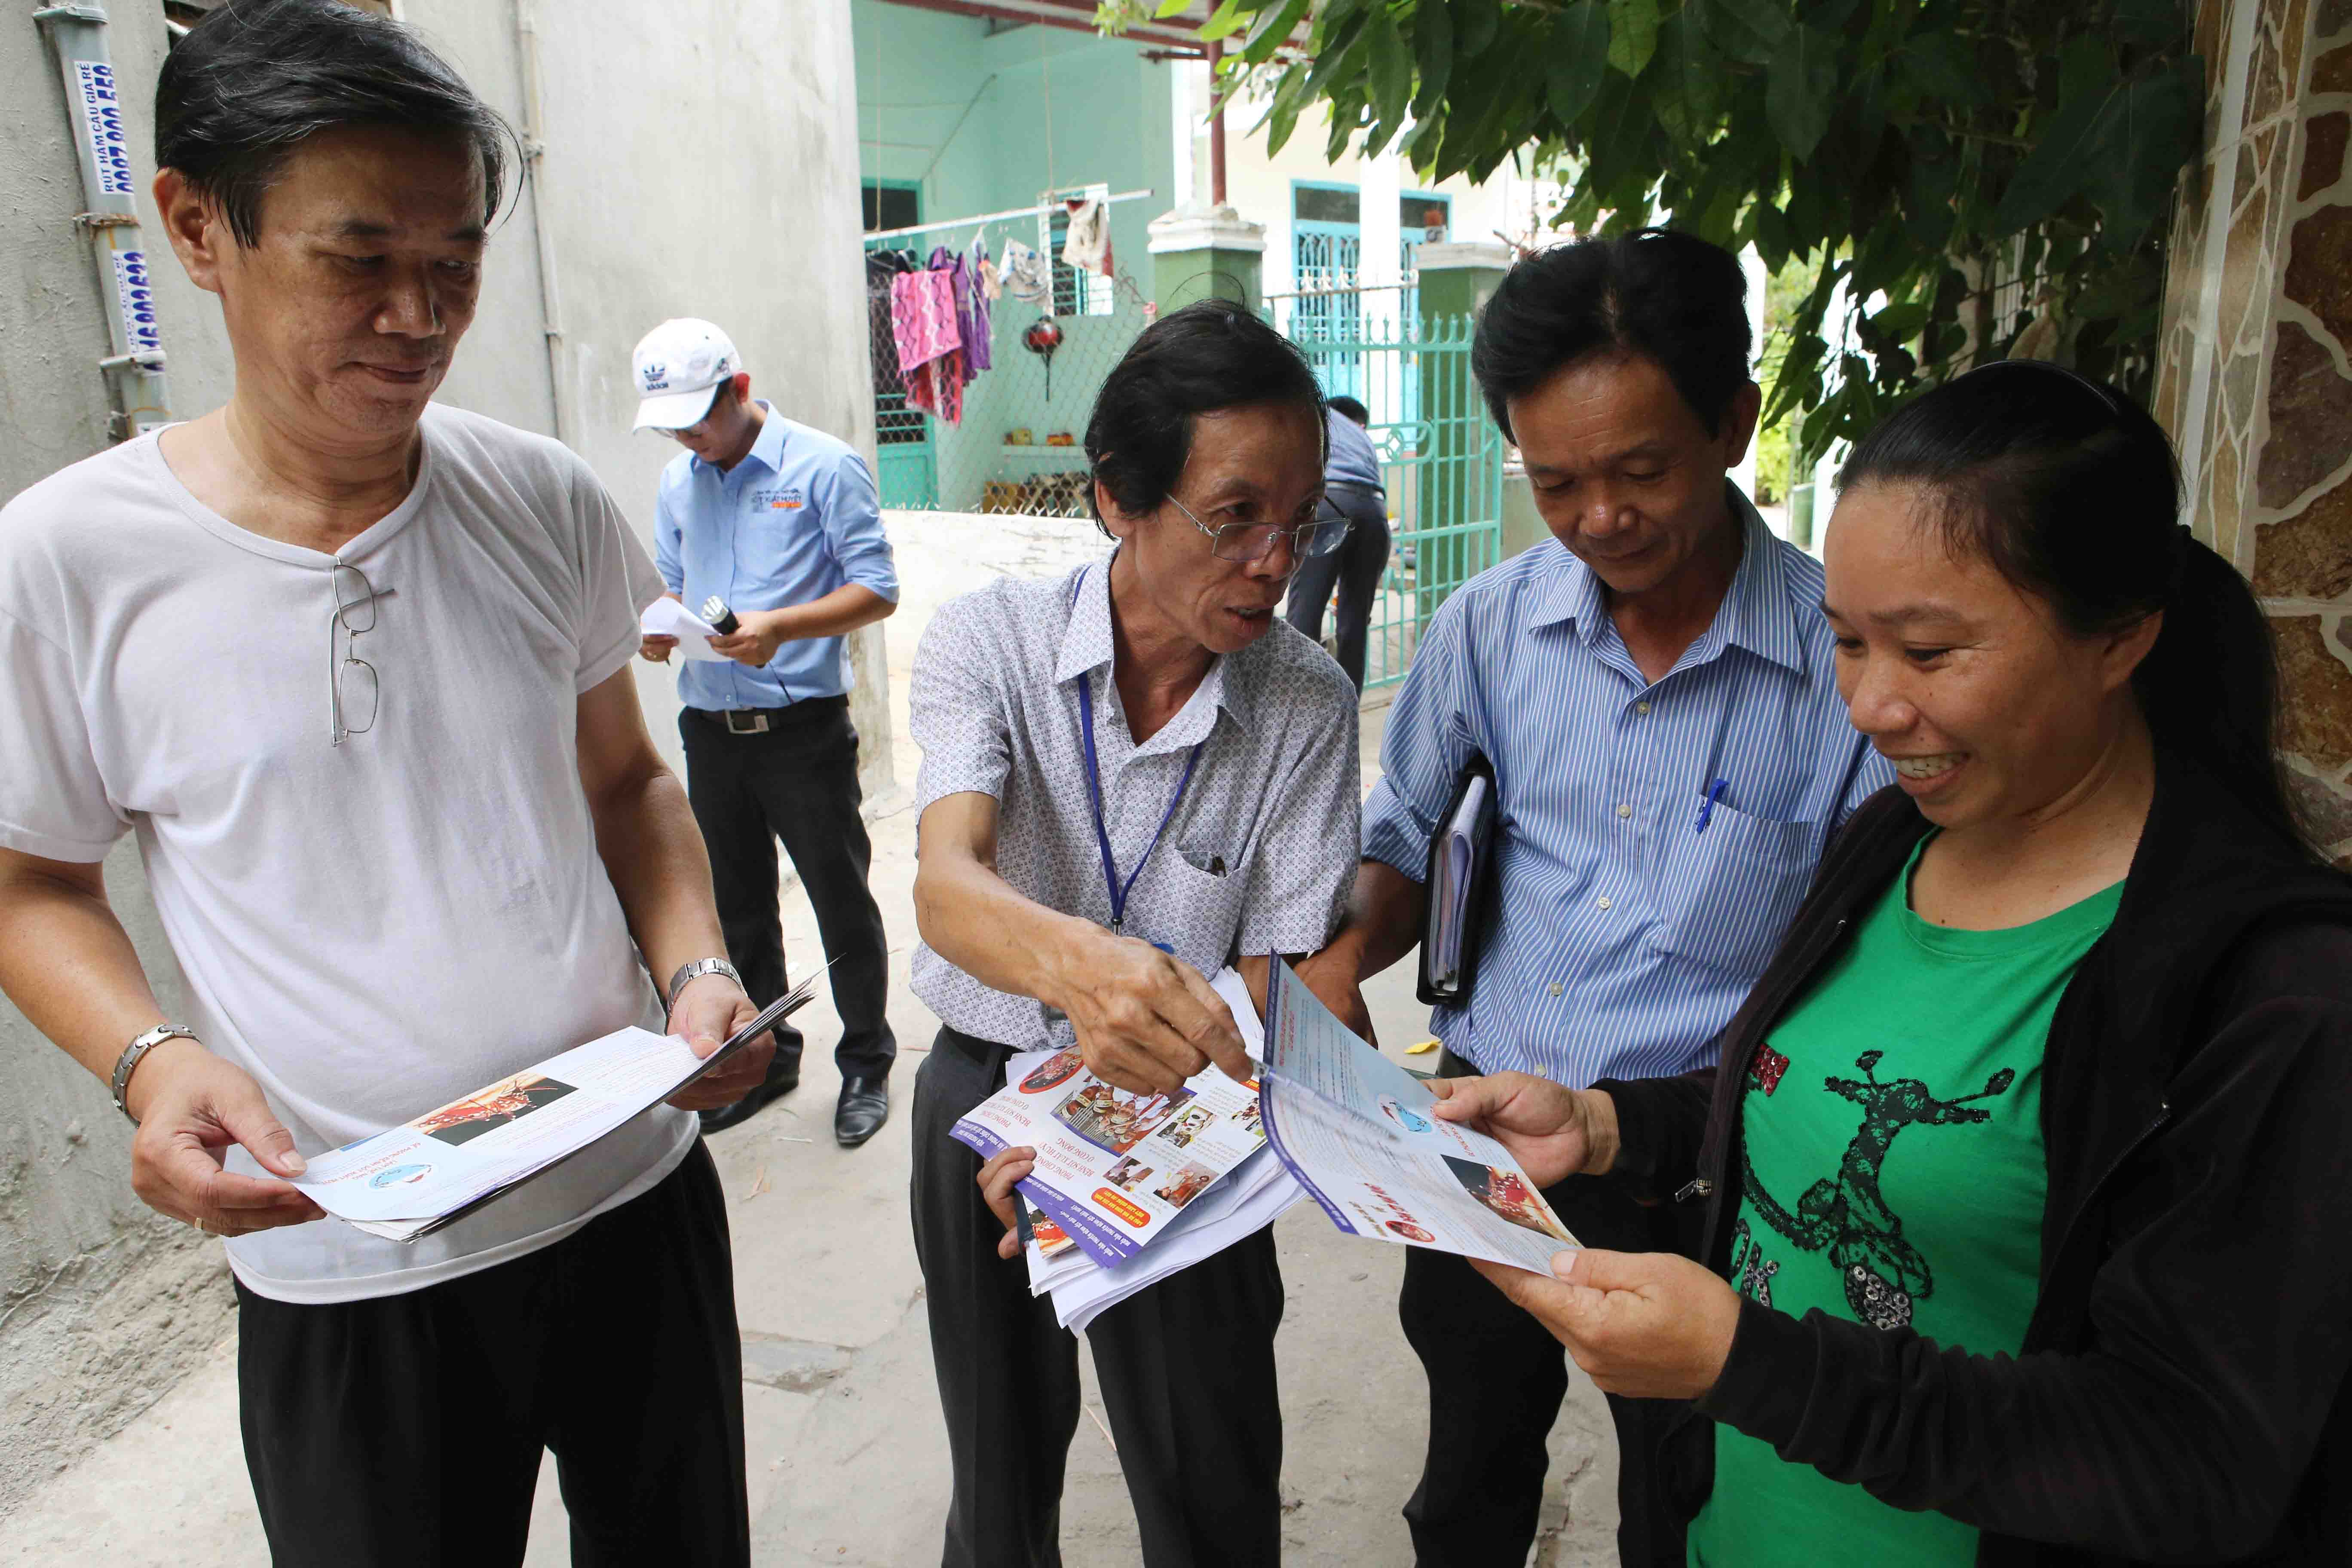 Cán bộ y tế phát tờ rơi tuyên truyền vận động người dân về cách phòng, chống sốt xuất huyết trong cộng đồng tại quận Sơn Trà. (Ảnh: Trần Lê Lâm/TTXVN)